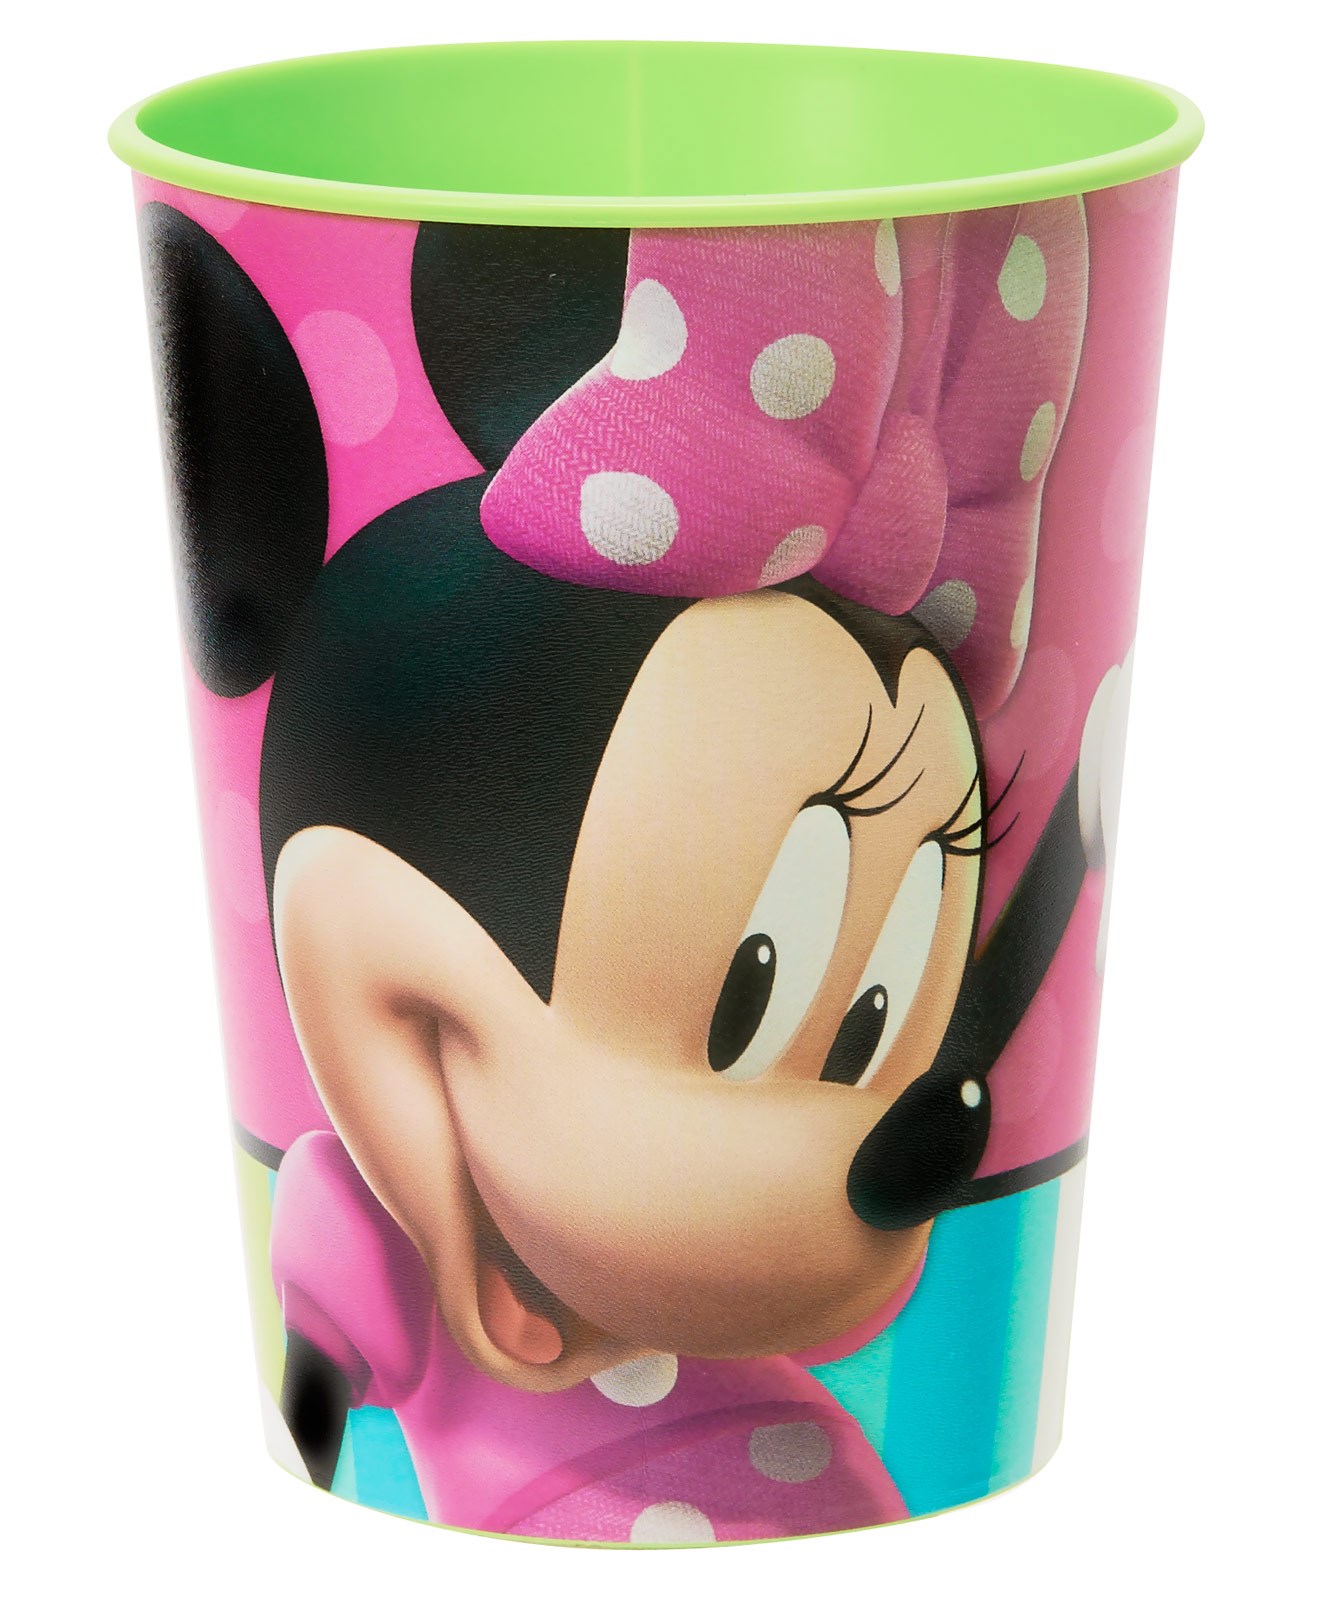 Disney Minnie Mouse Bow-tique 16 oz. Plastic Cup